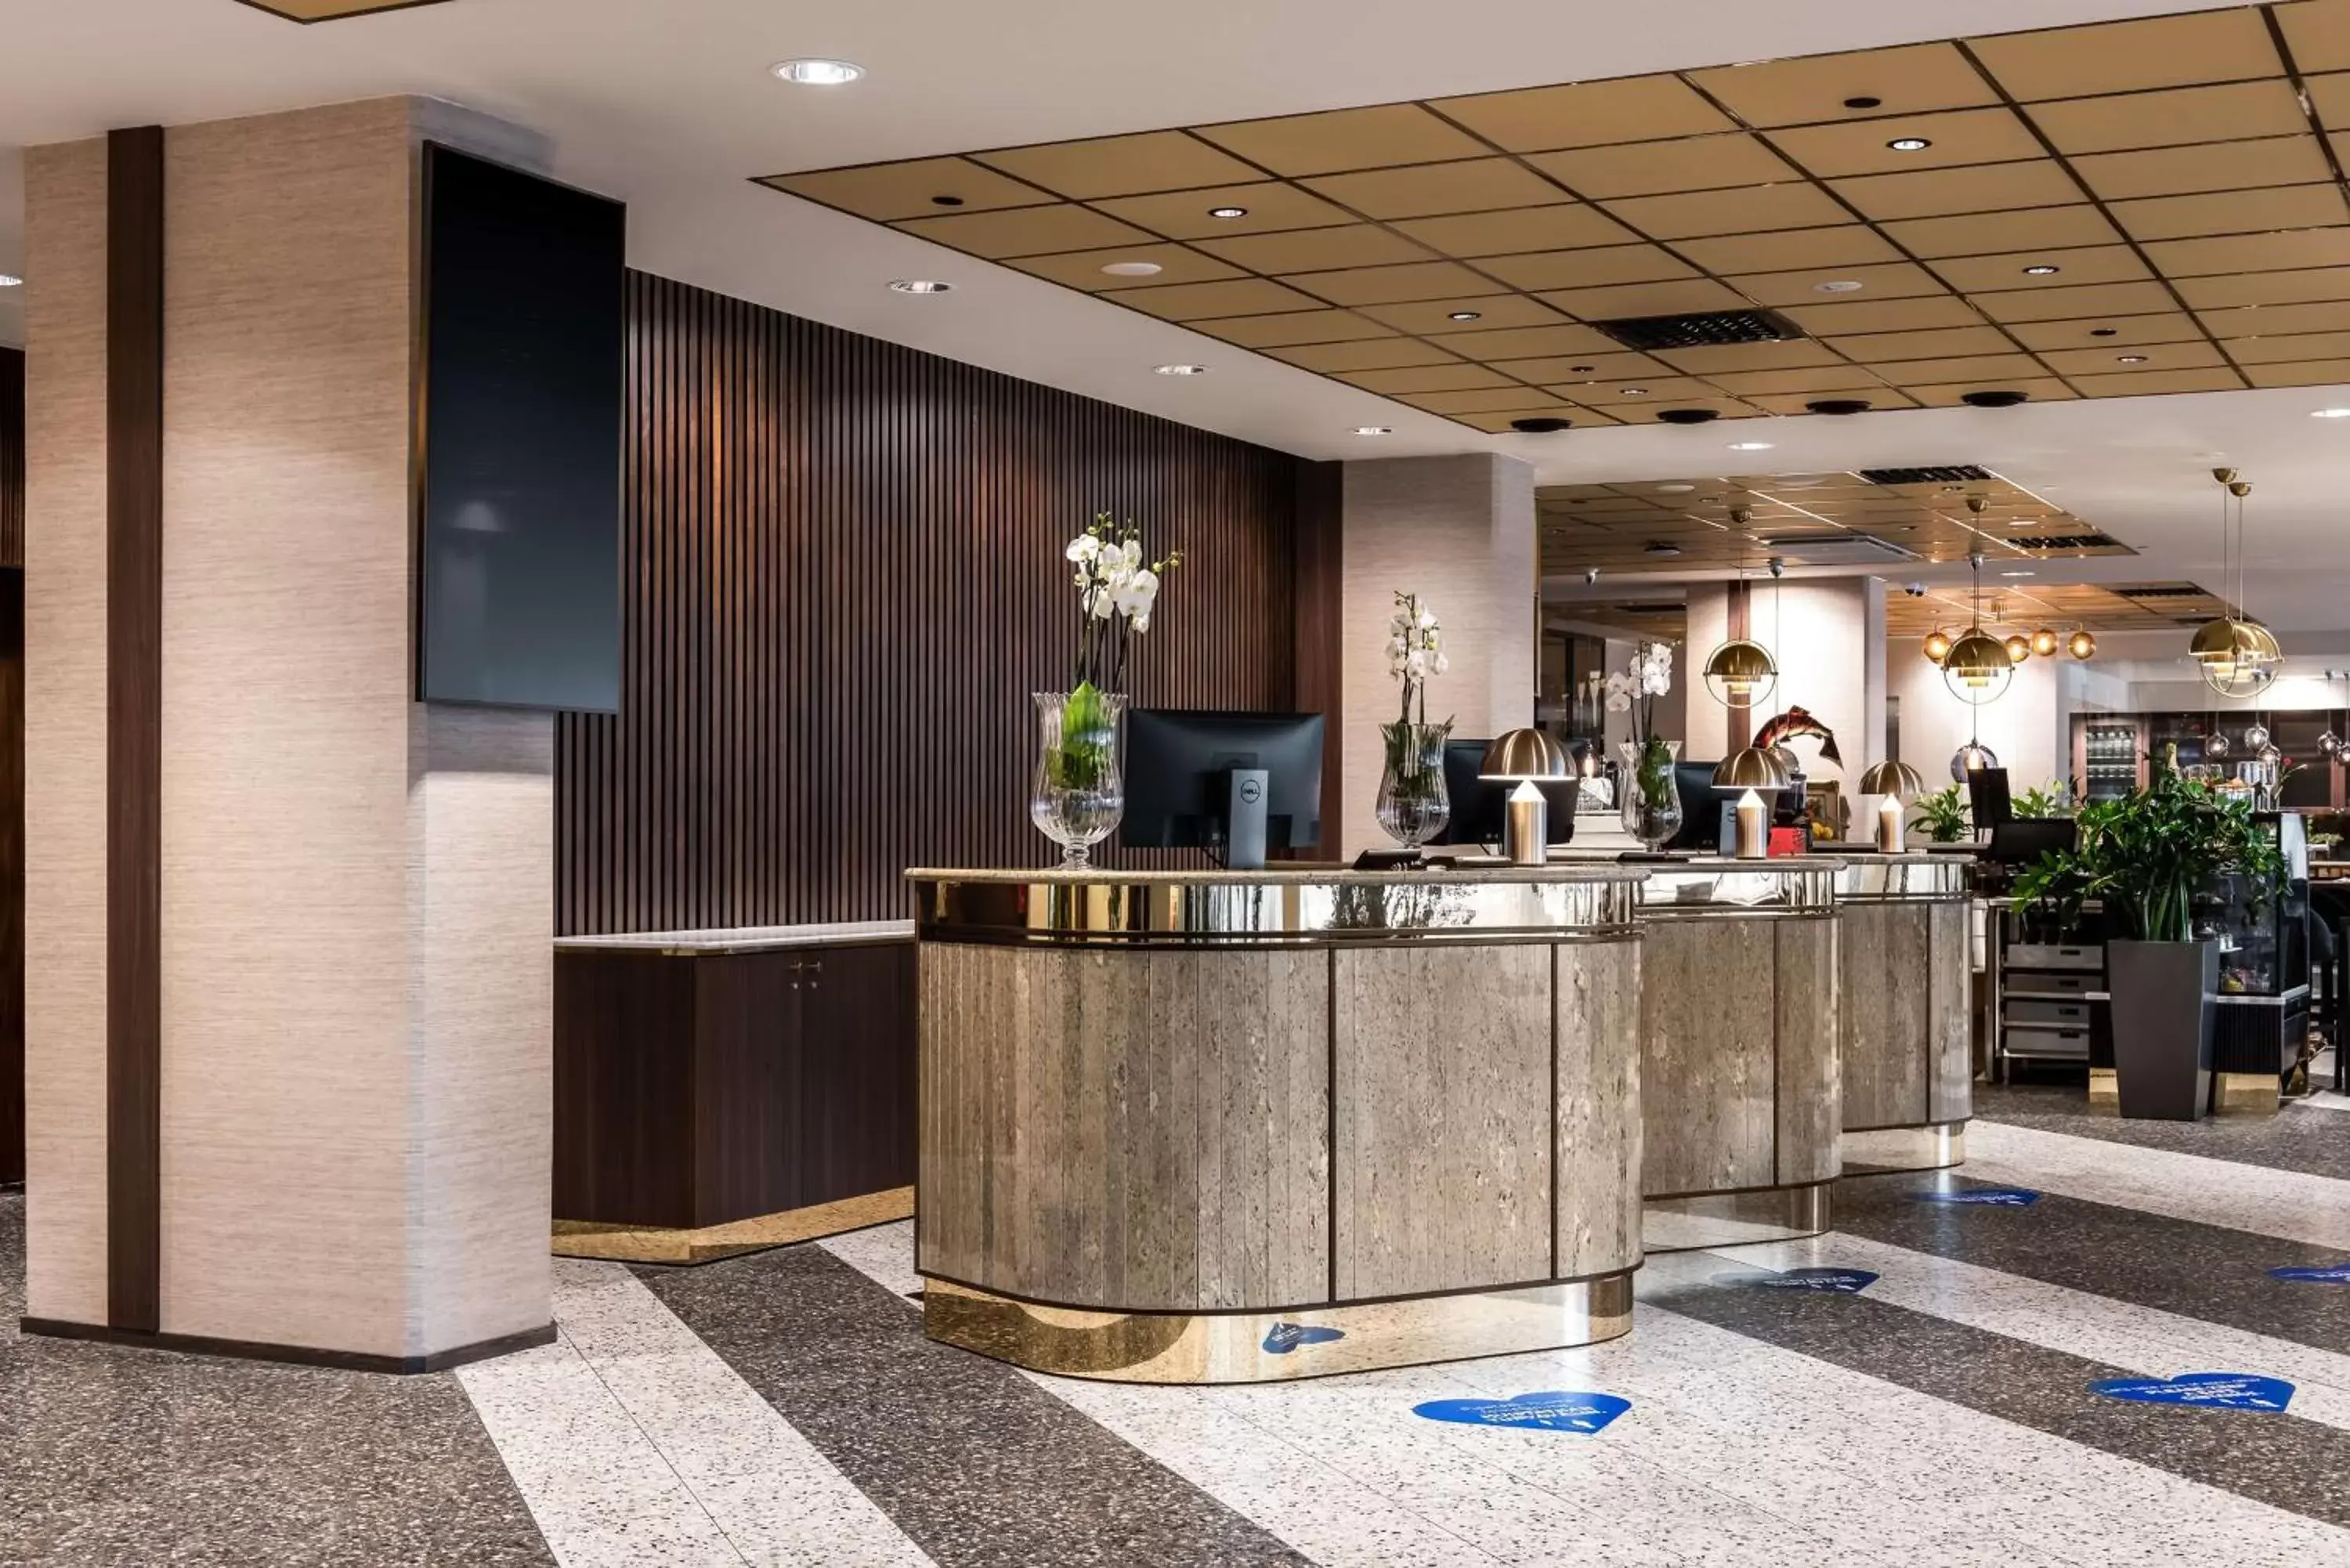 Lobby or reception, Lobby/Reception in Radisson Blu Hotel, Oulu